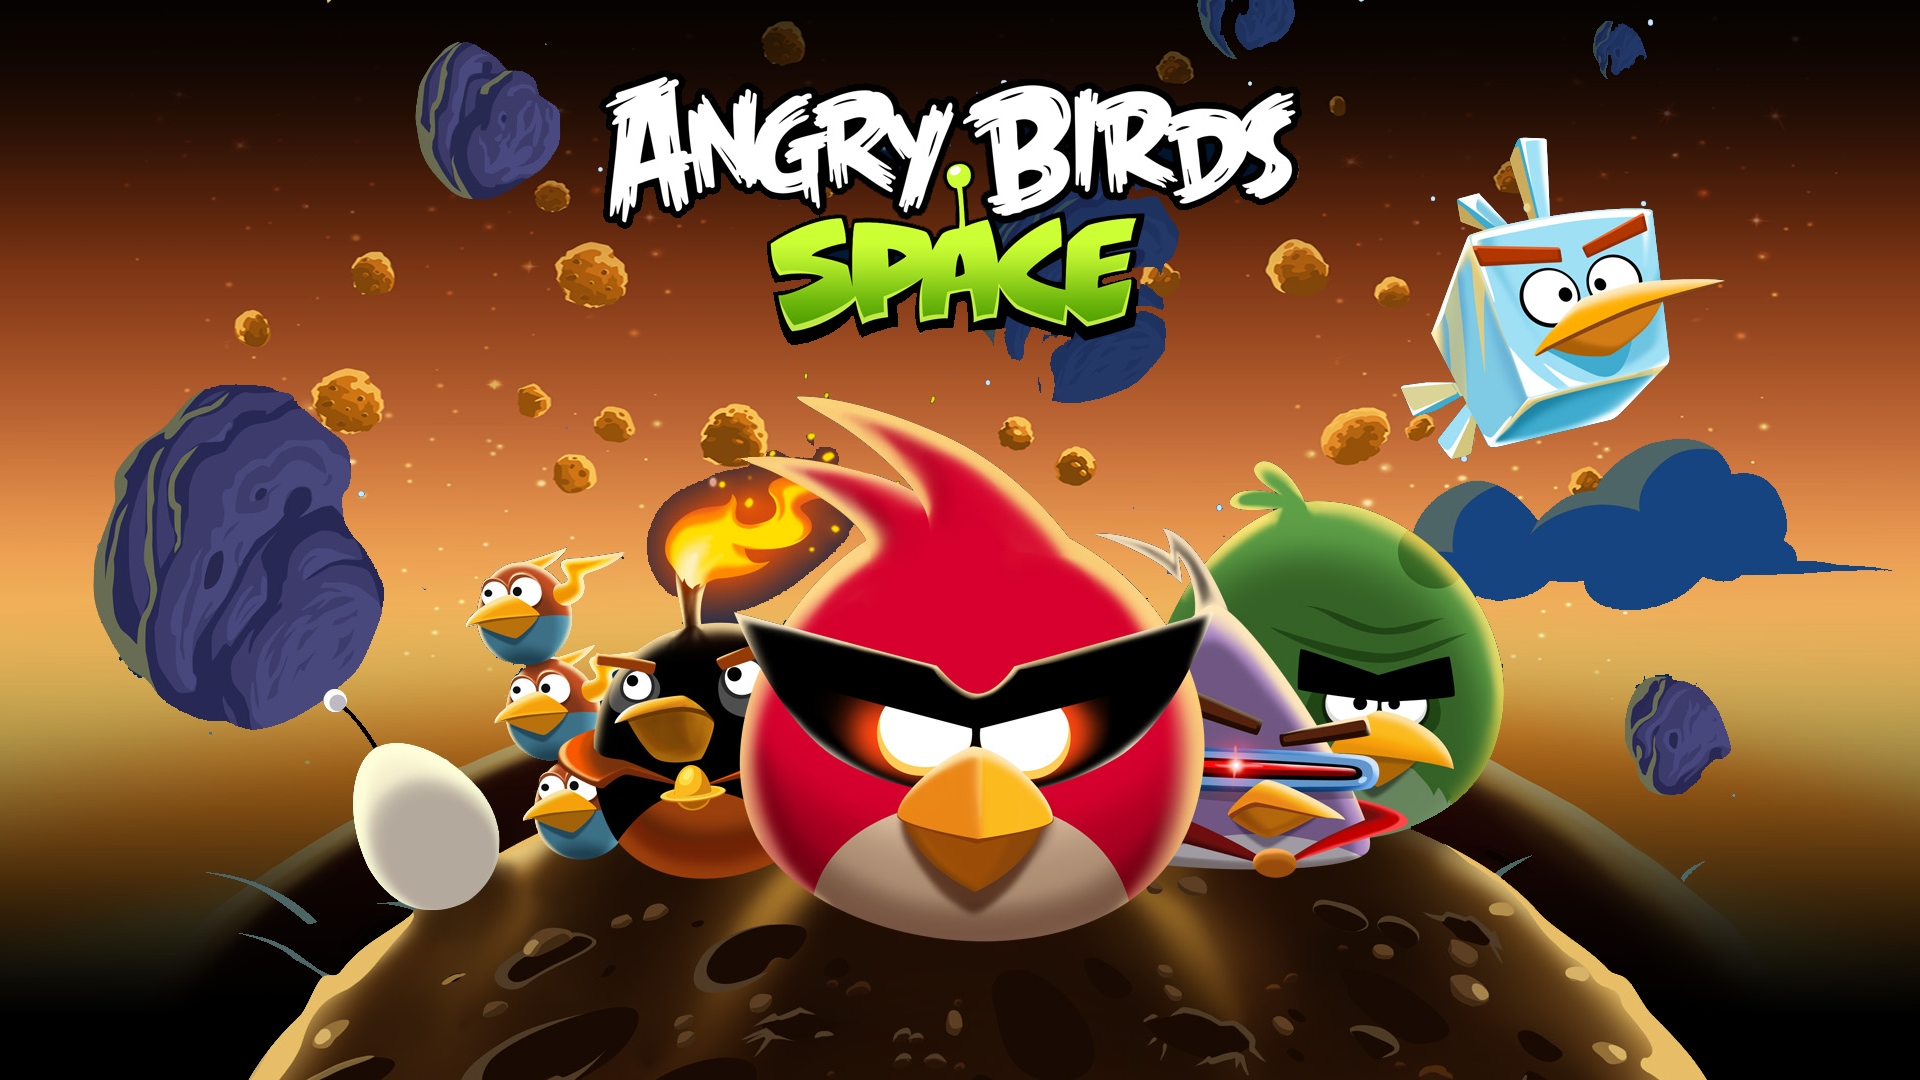 Angry Birds Space, ¿si o no a Windows Phone? [Actualizado]